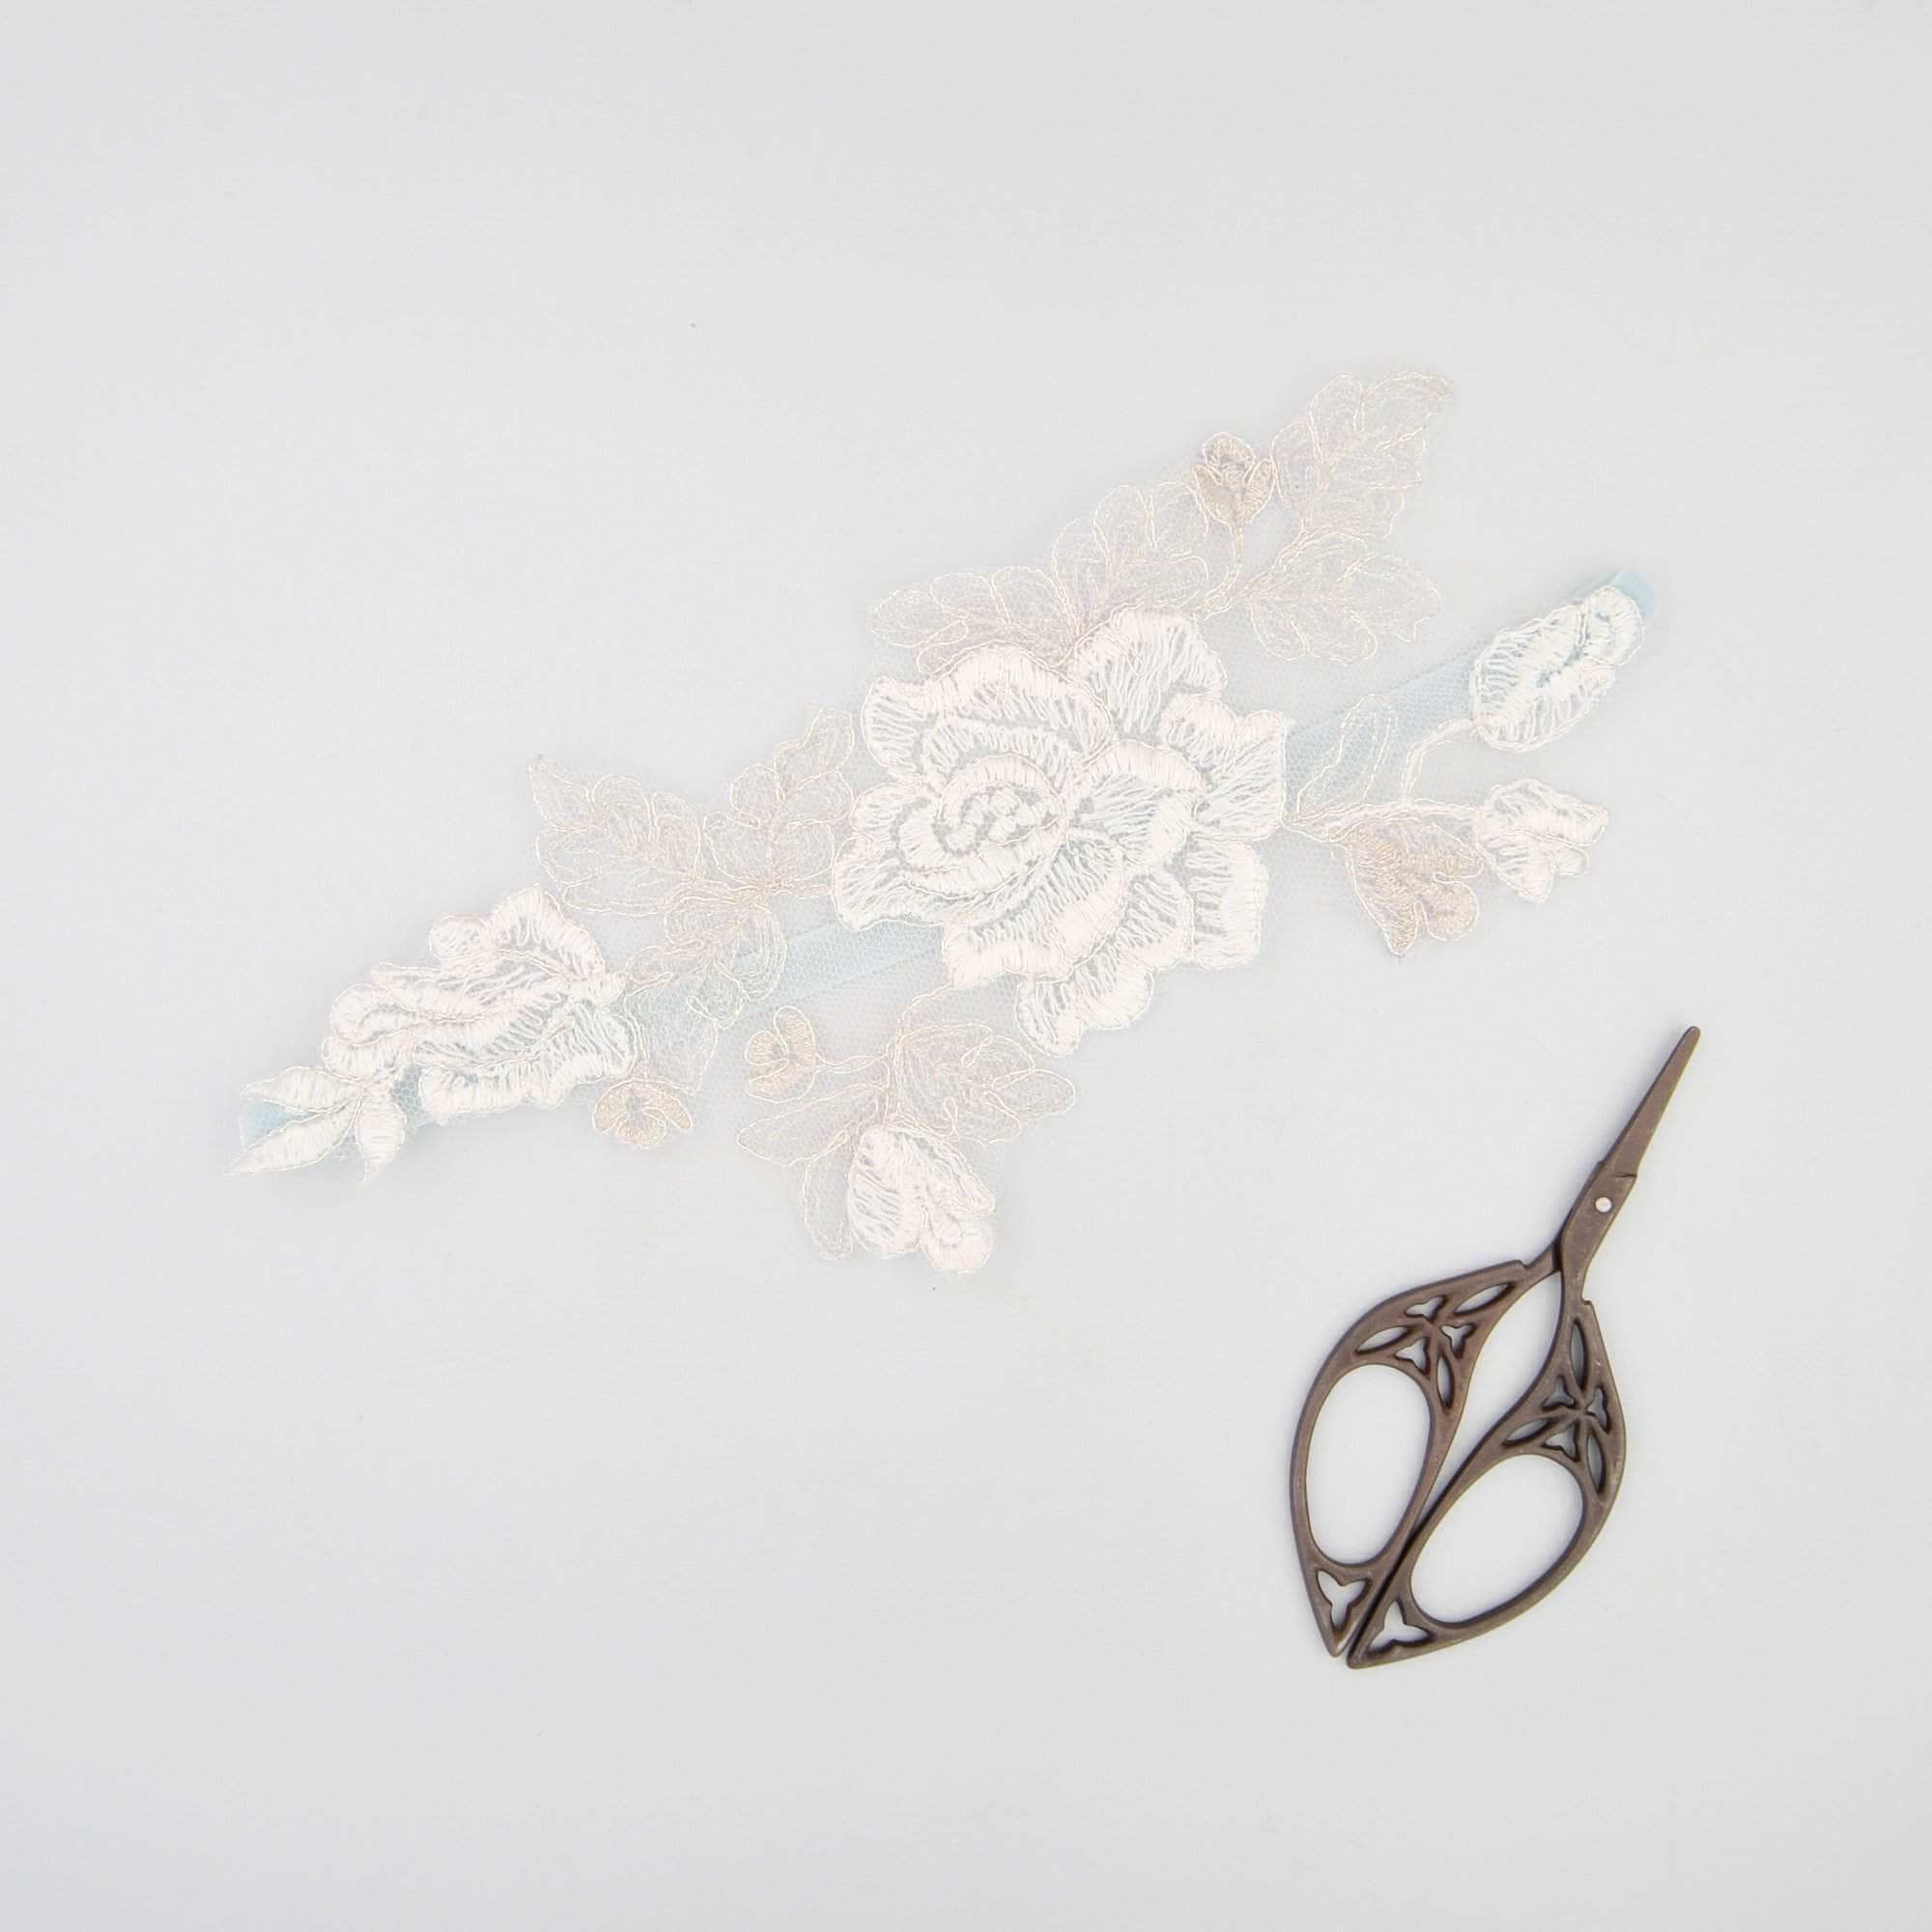 Wedding Garter 'Something blue' silver and ivory lace motif garter - 'Amara'